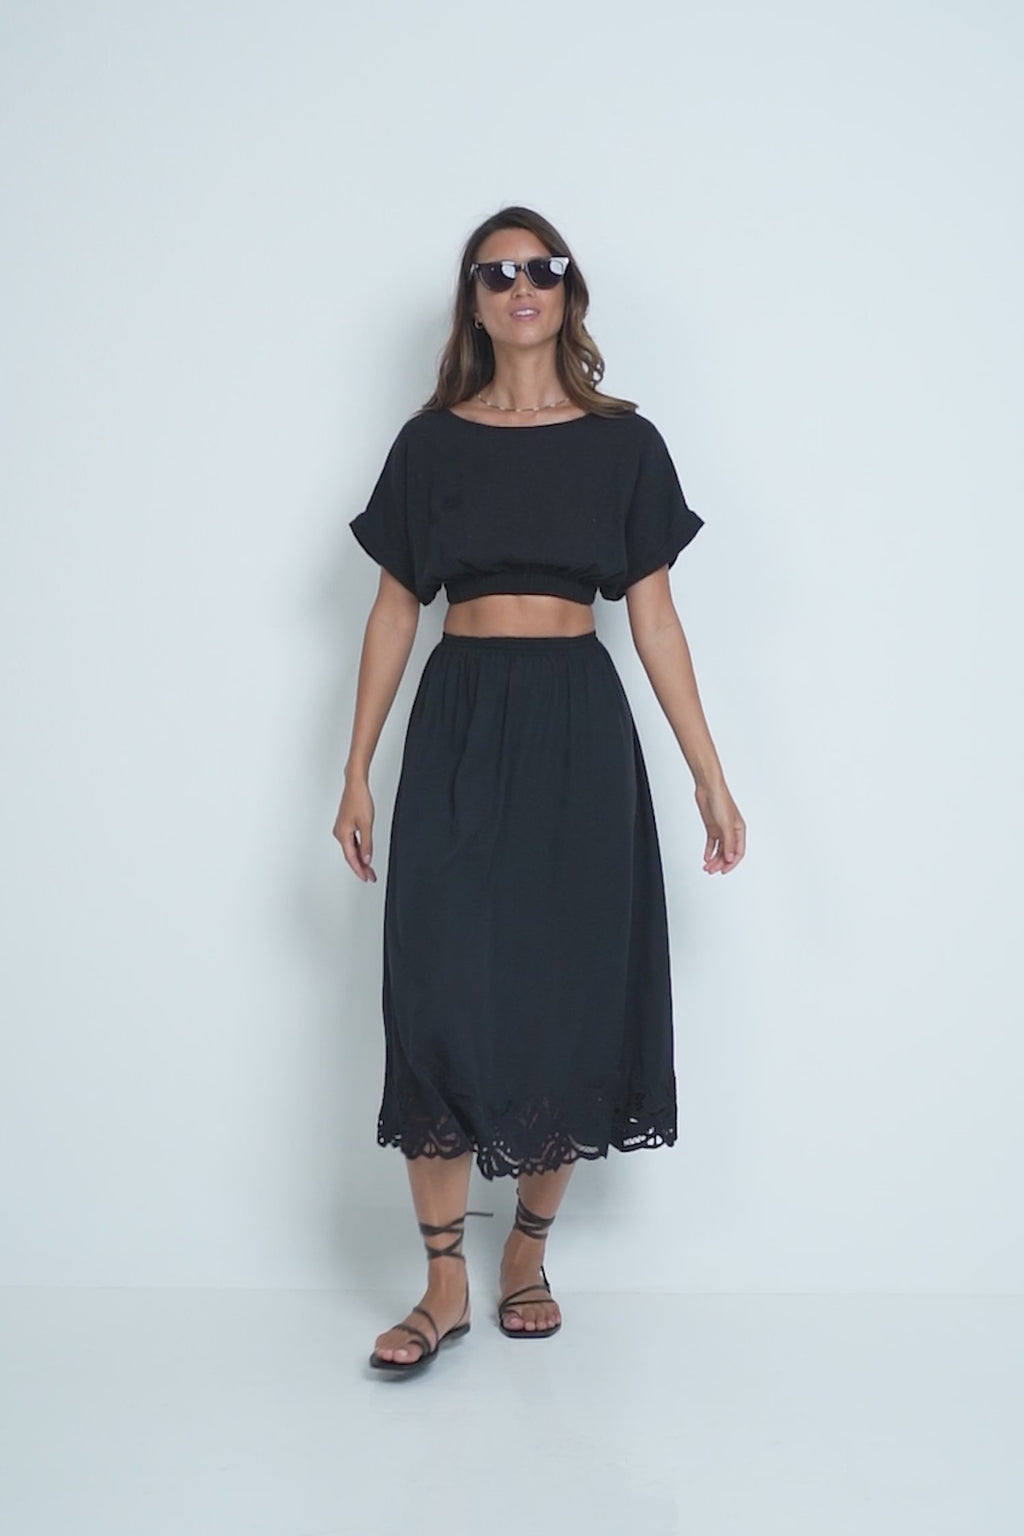 A Model Wearing the Loren Skirt Black by LILYA